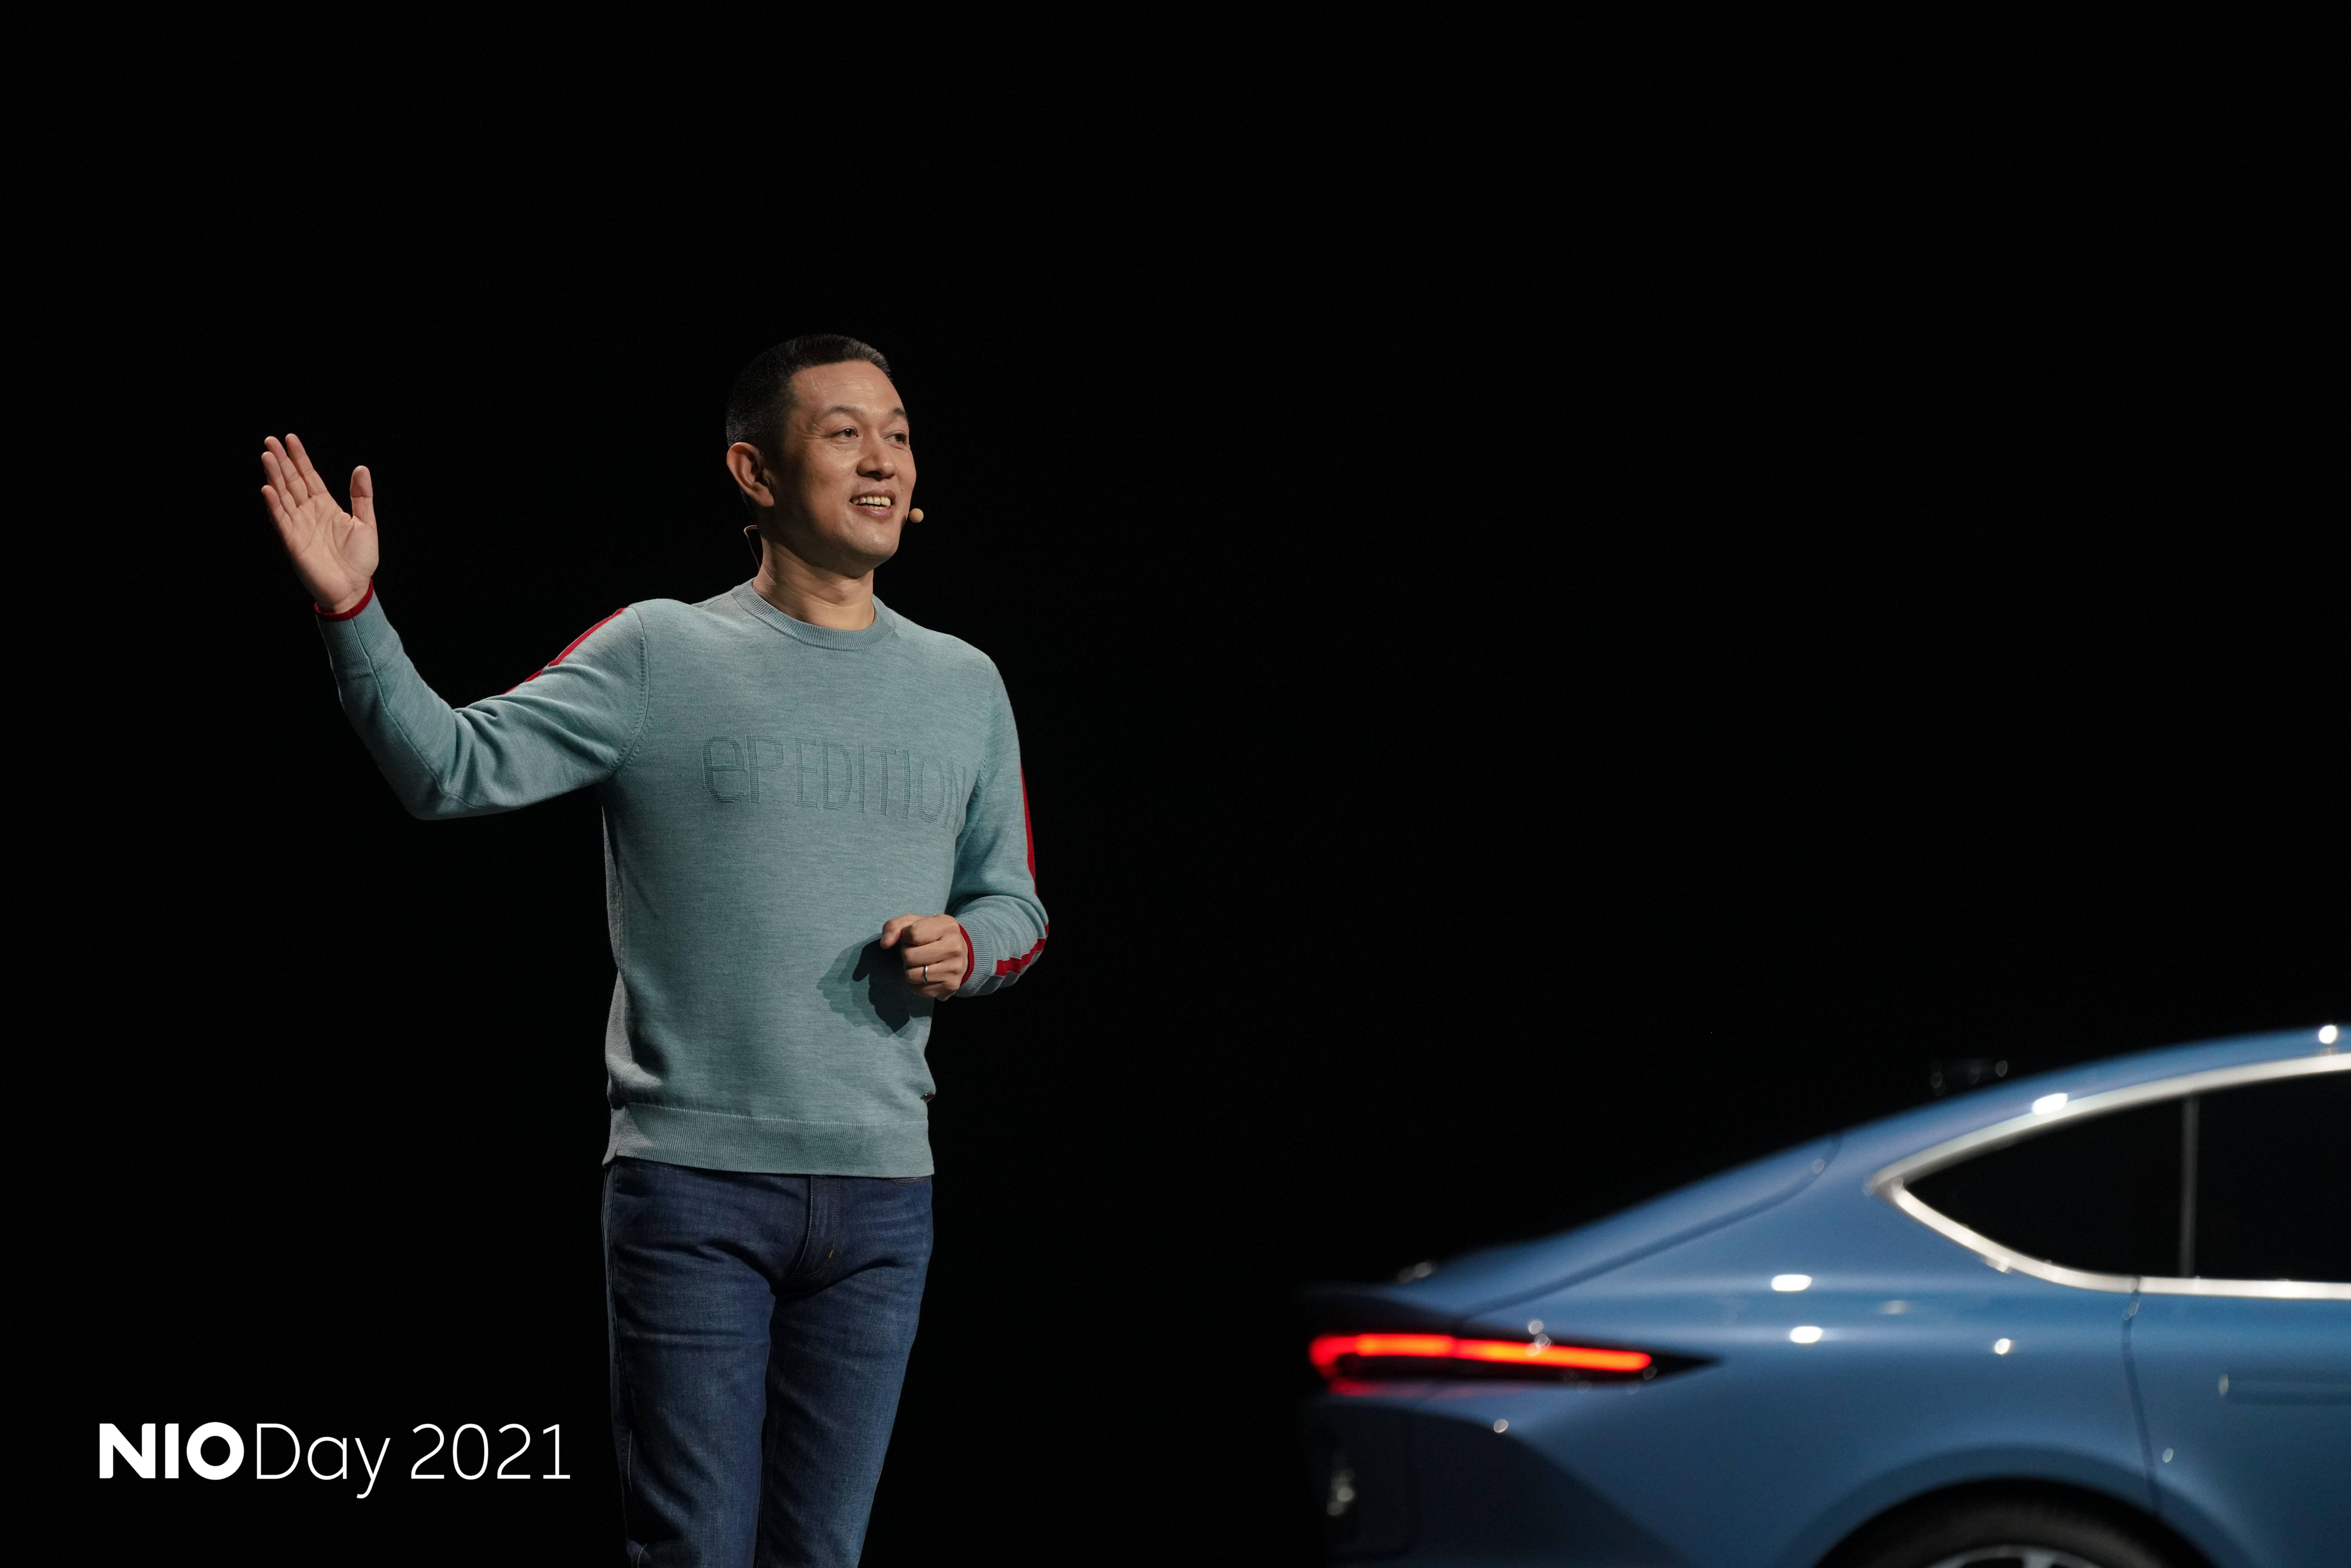 nio1 - Tesla richiama un gran numero di auto di produzione nazionale / Una casa automobilistica tedesca secolare dichiara bancarotta / I progressi di Xiaomi si rivelano peggiori del previsto